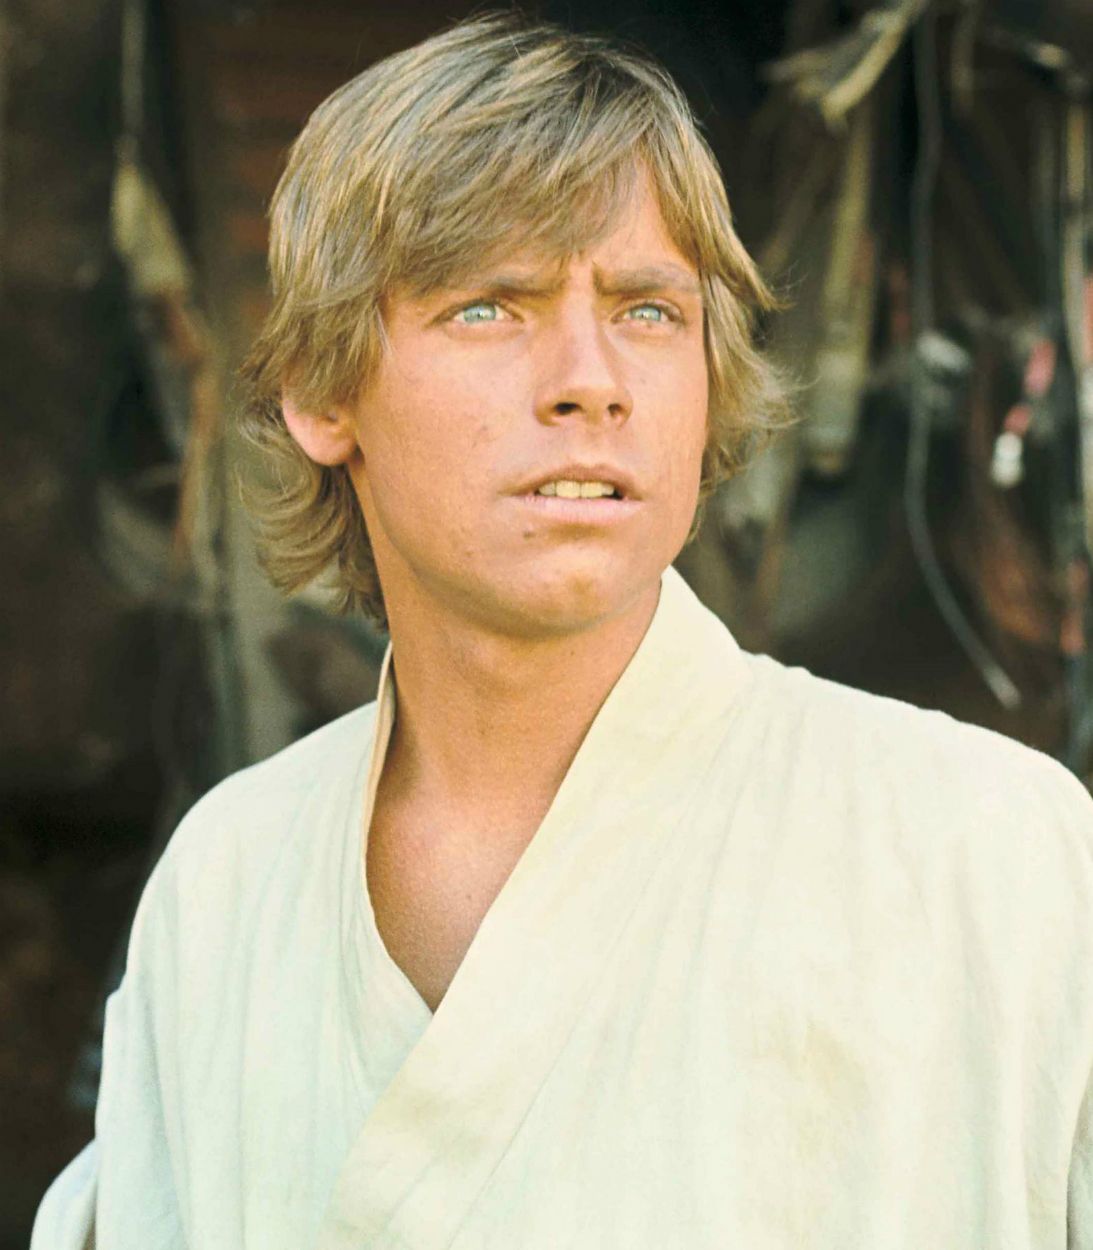 Luke Skywalker A New Hope Vertical